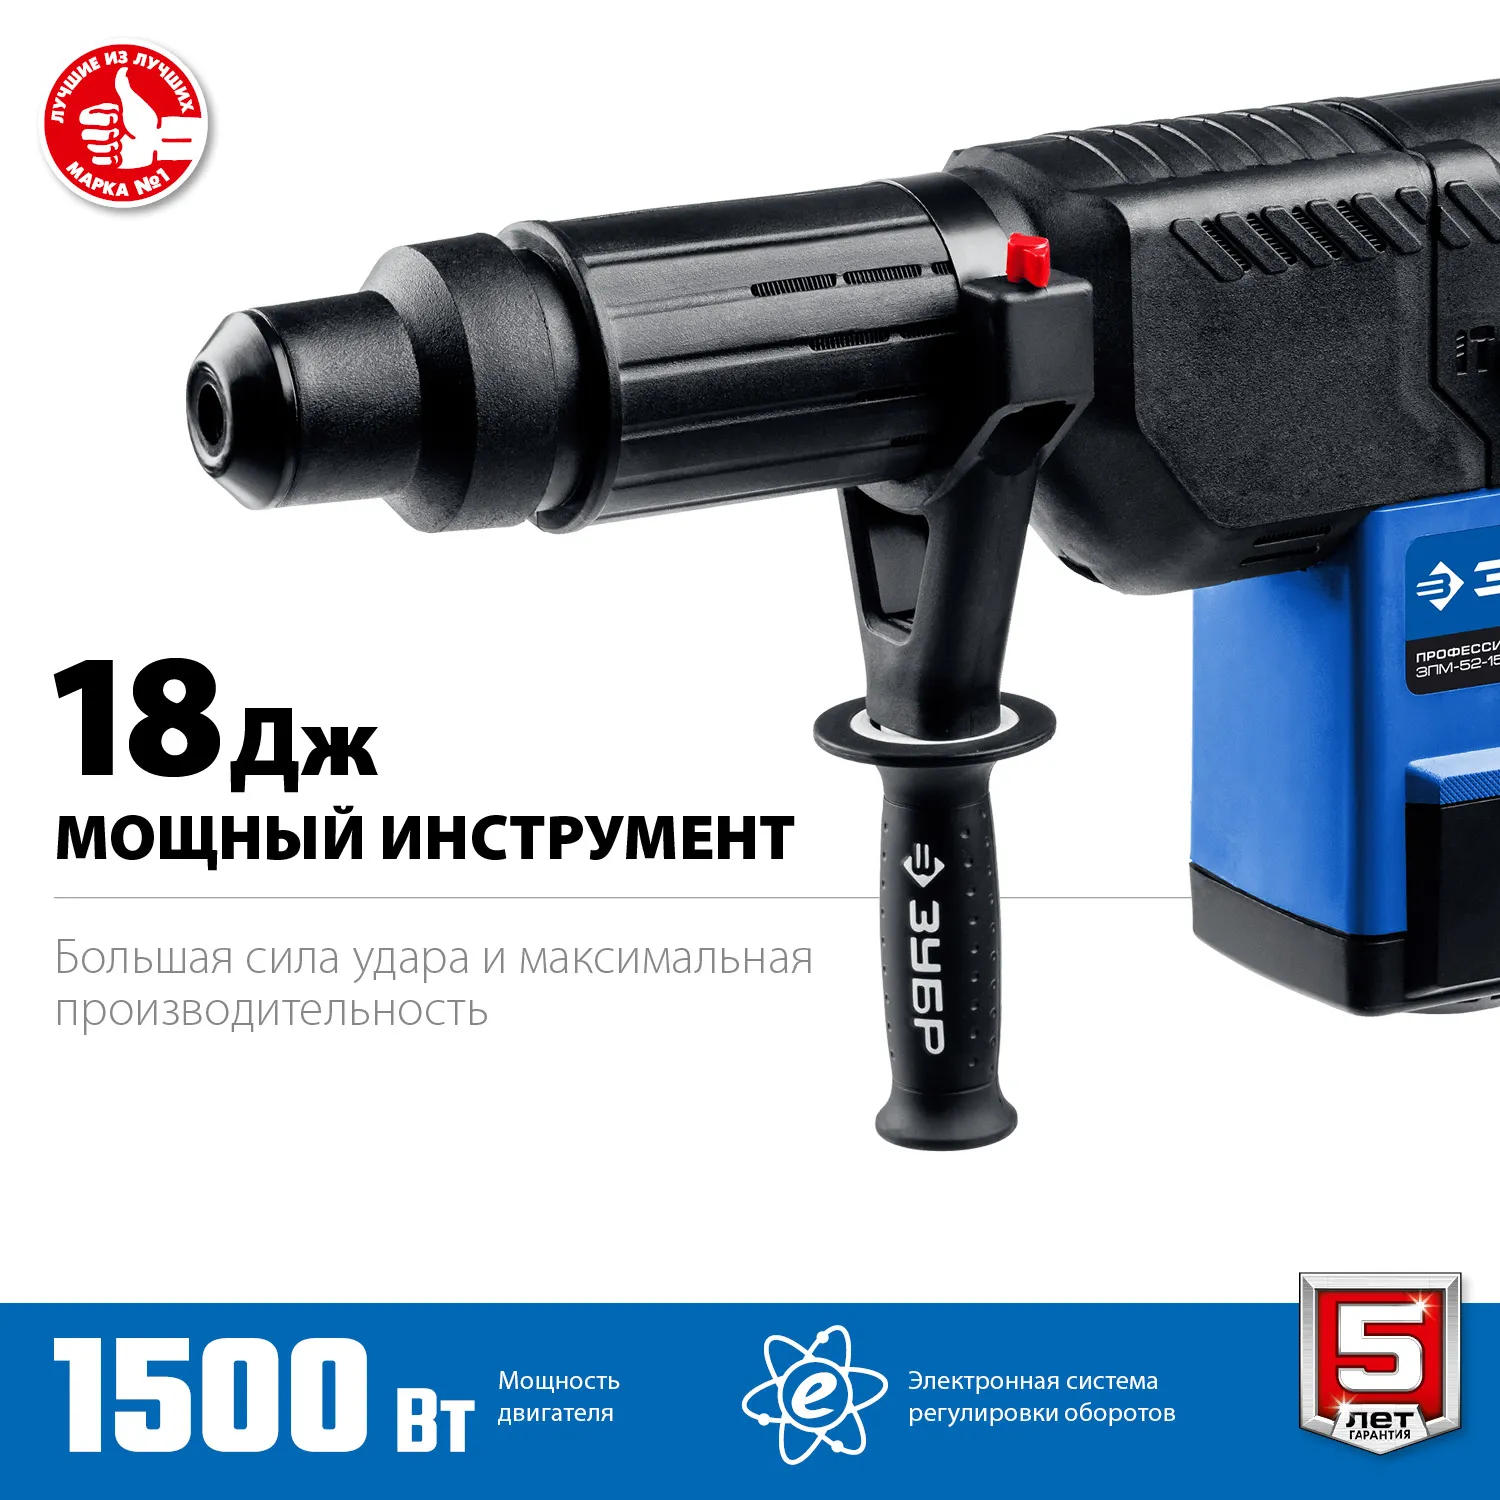 ЗУБР 1500 Вт, 52 мм, перфоратор SDS Max, серия Профессионал